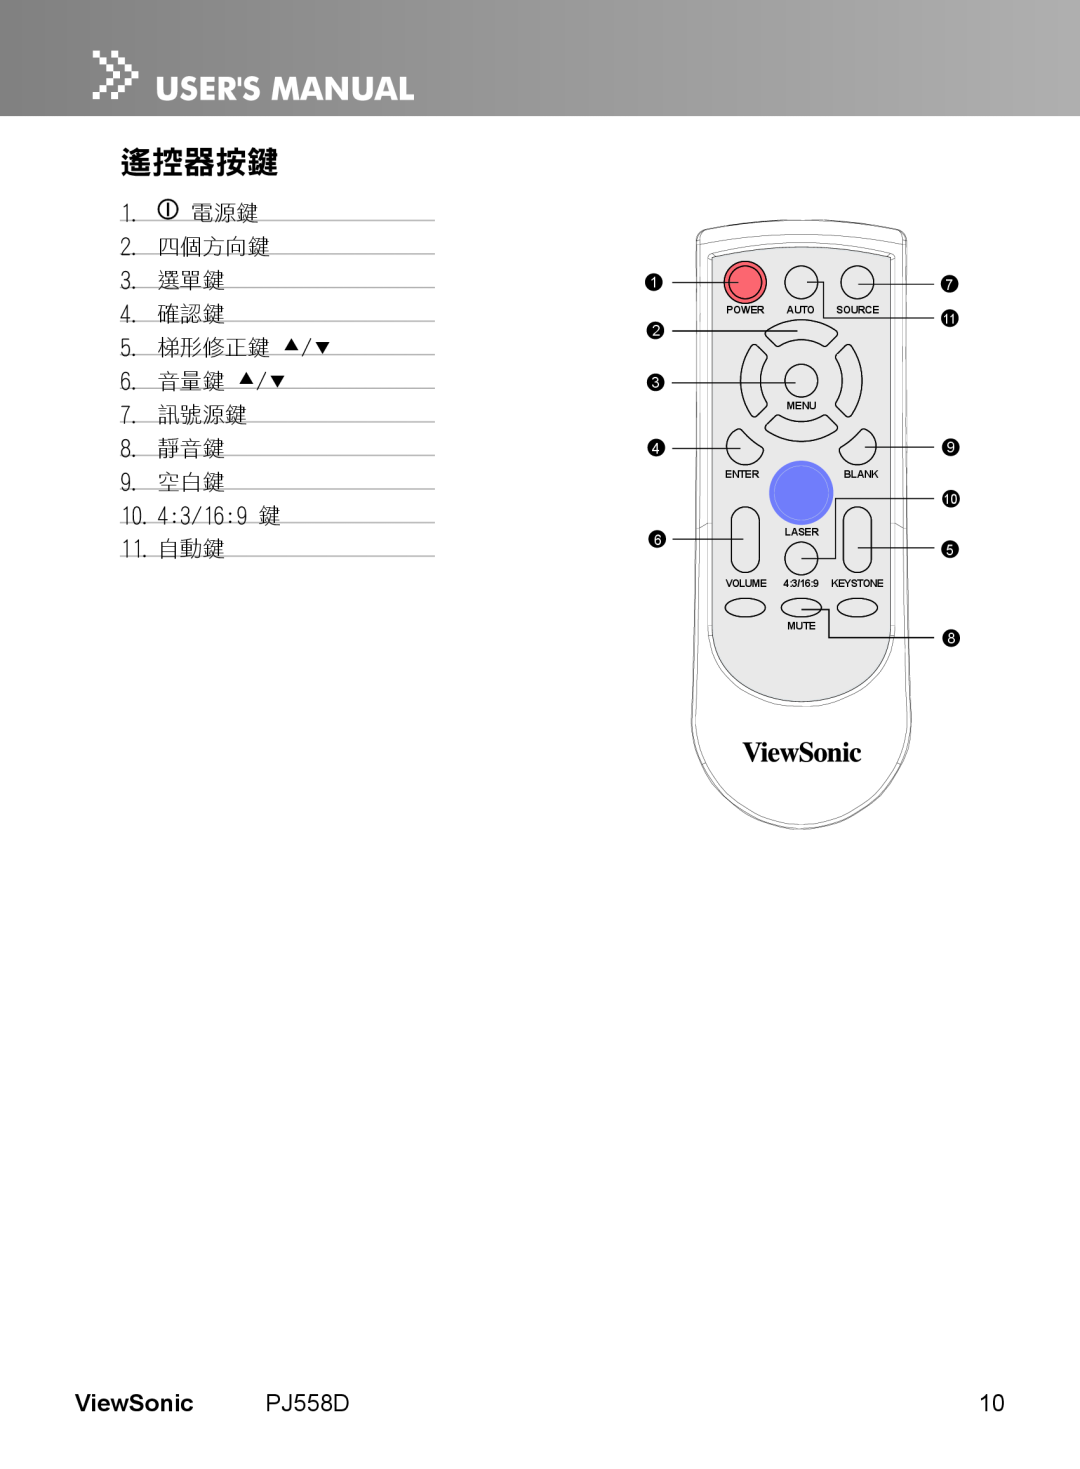 ViewSonic PJ558D 遙控器按鍵, ViewSonic, 2. 四個方向鍵 3. 選單鍵 4. 確認鍵 5. 梯形修正鍵 /, 音量鍵 /, 訊號源鍵, Power Auto, Source, Menu, Enter 